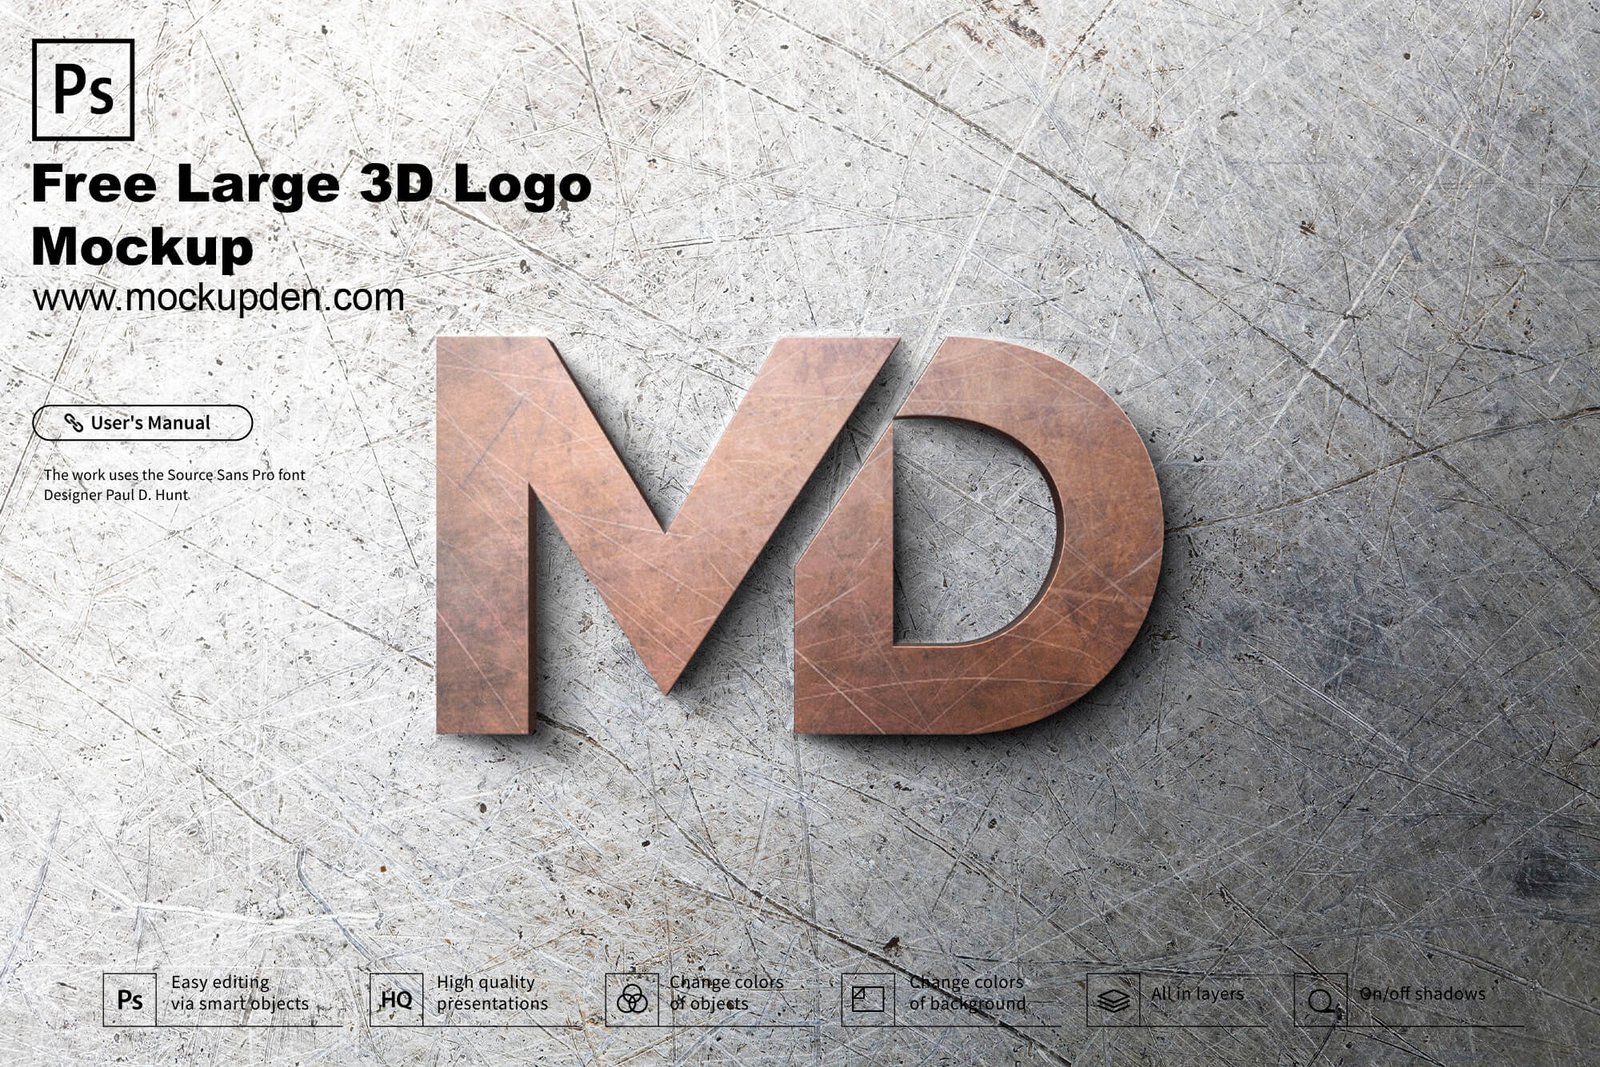 Free Large 3d Logo Mockup Psd Template Mockup Den